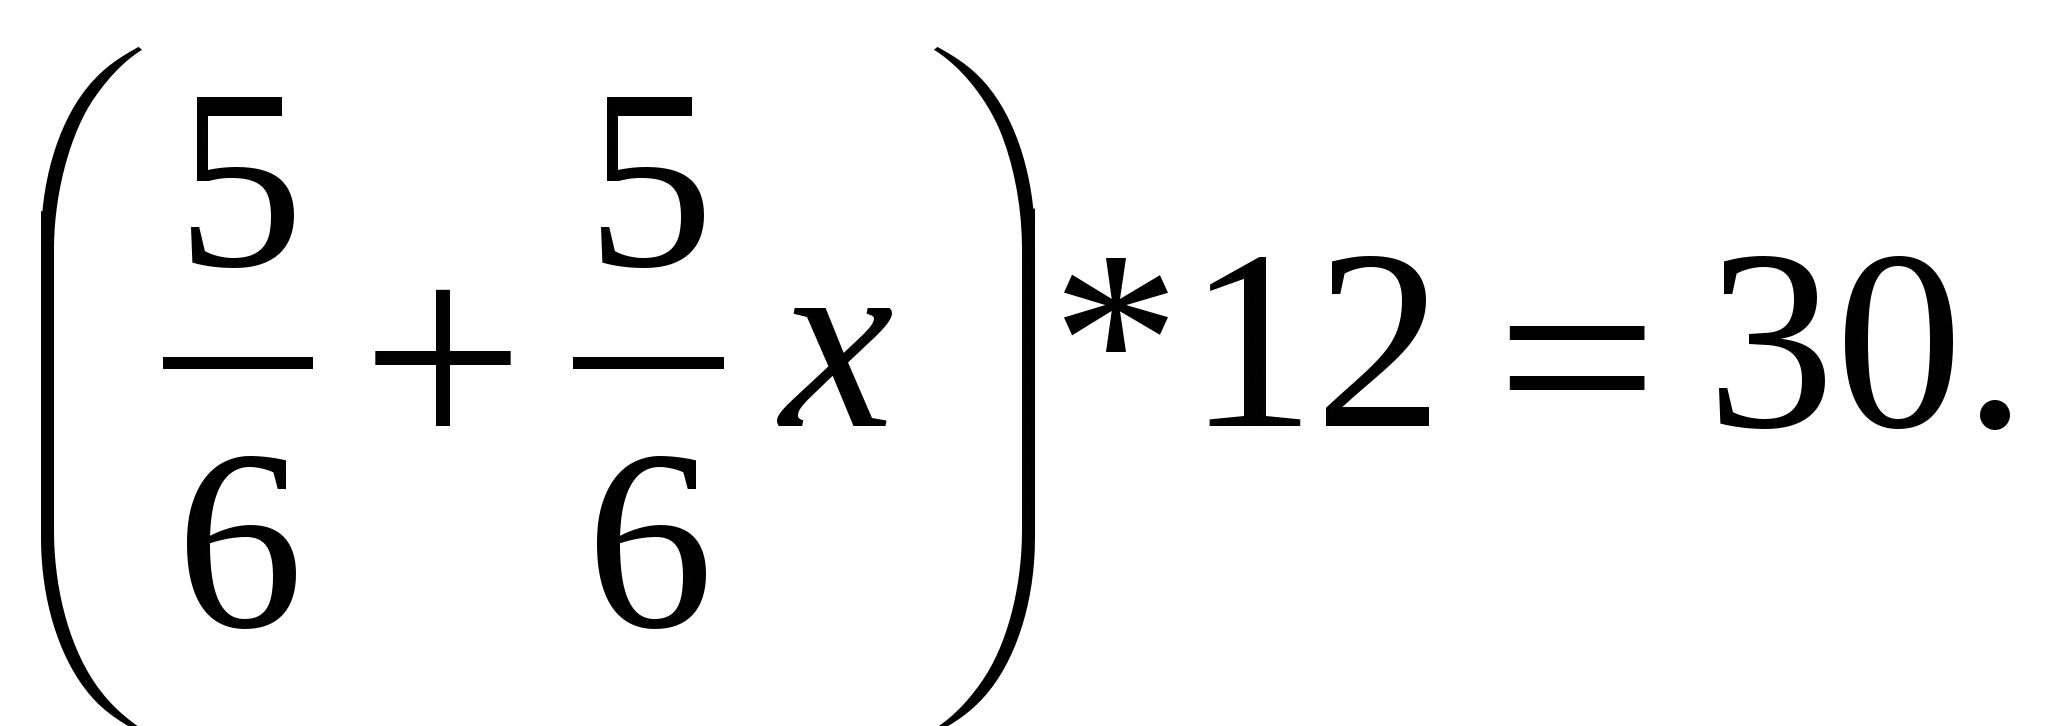 Урок математики в 6 классе Применение распределительного свойства умножения